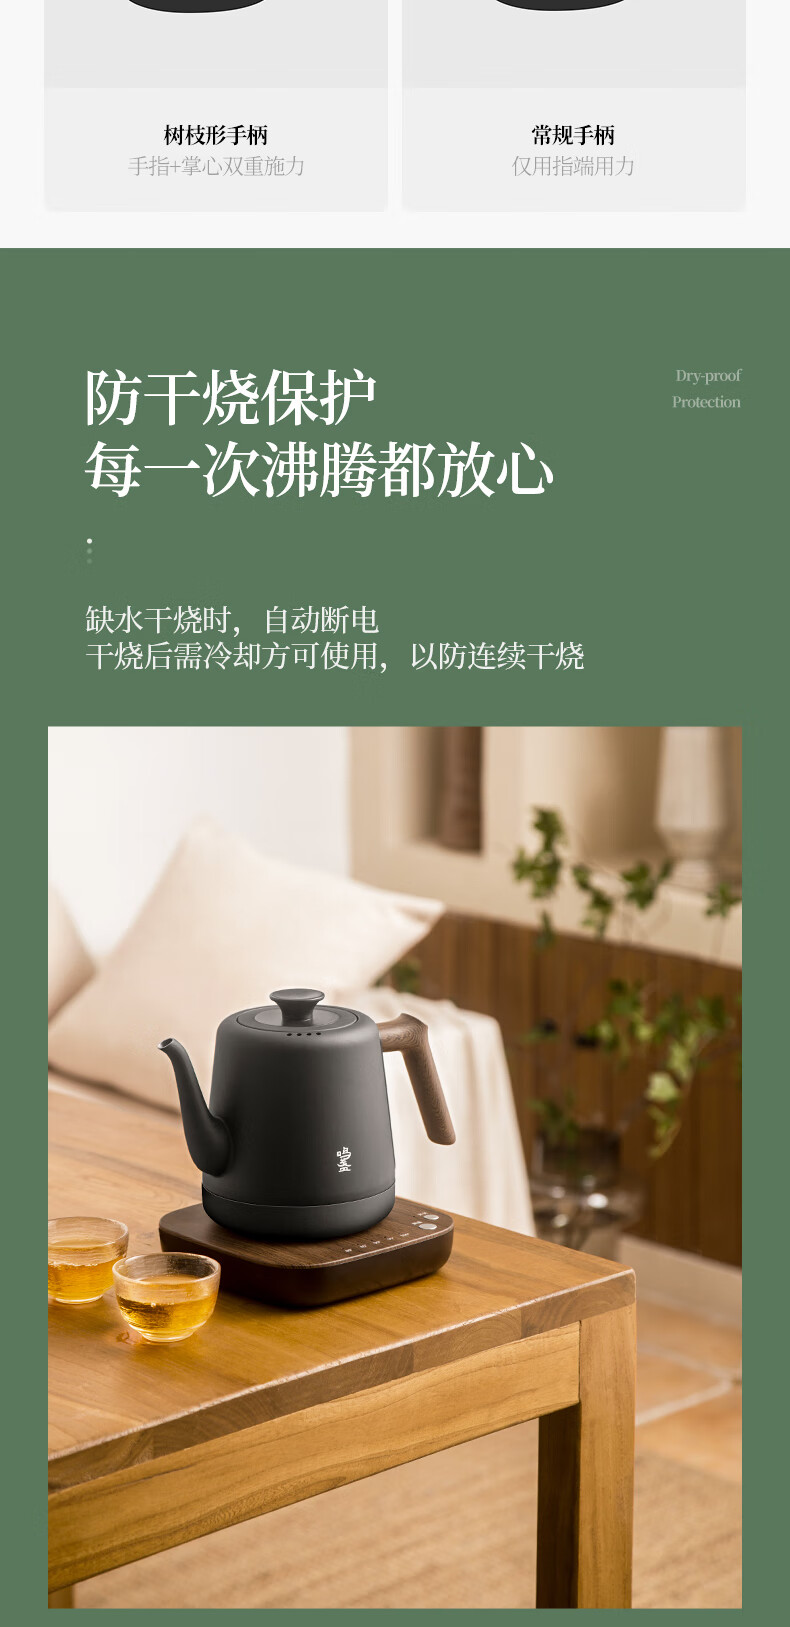 茶艺壶-1200W-790_10.jpg